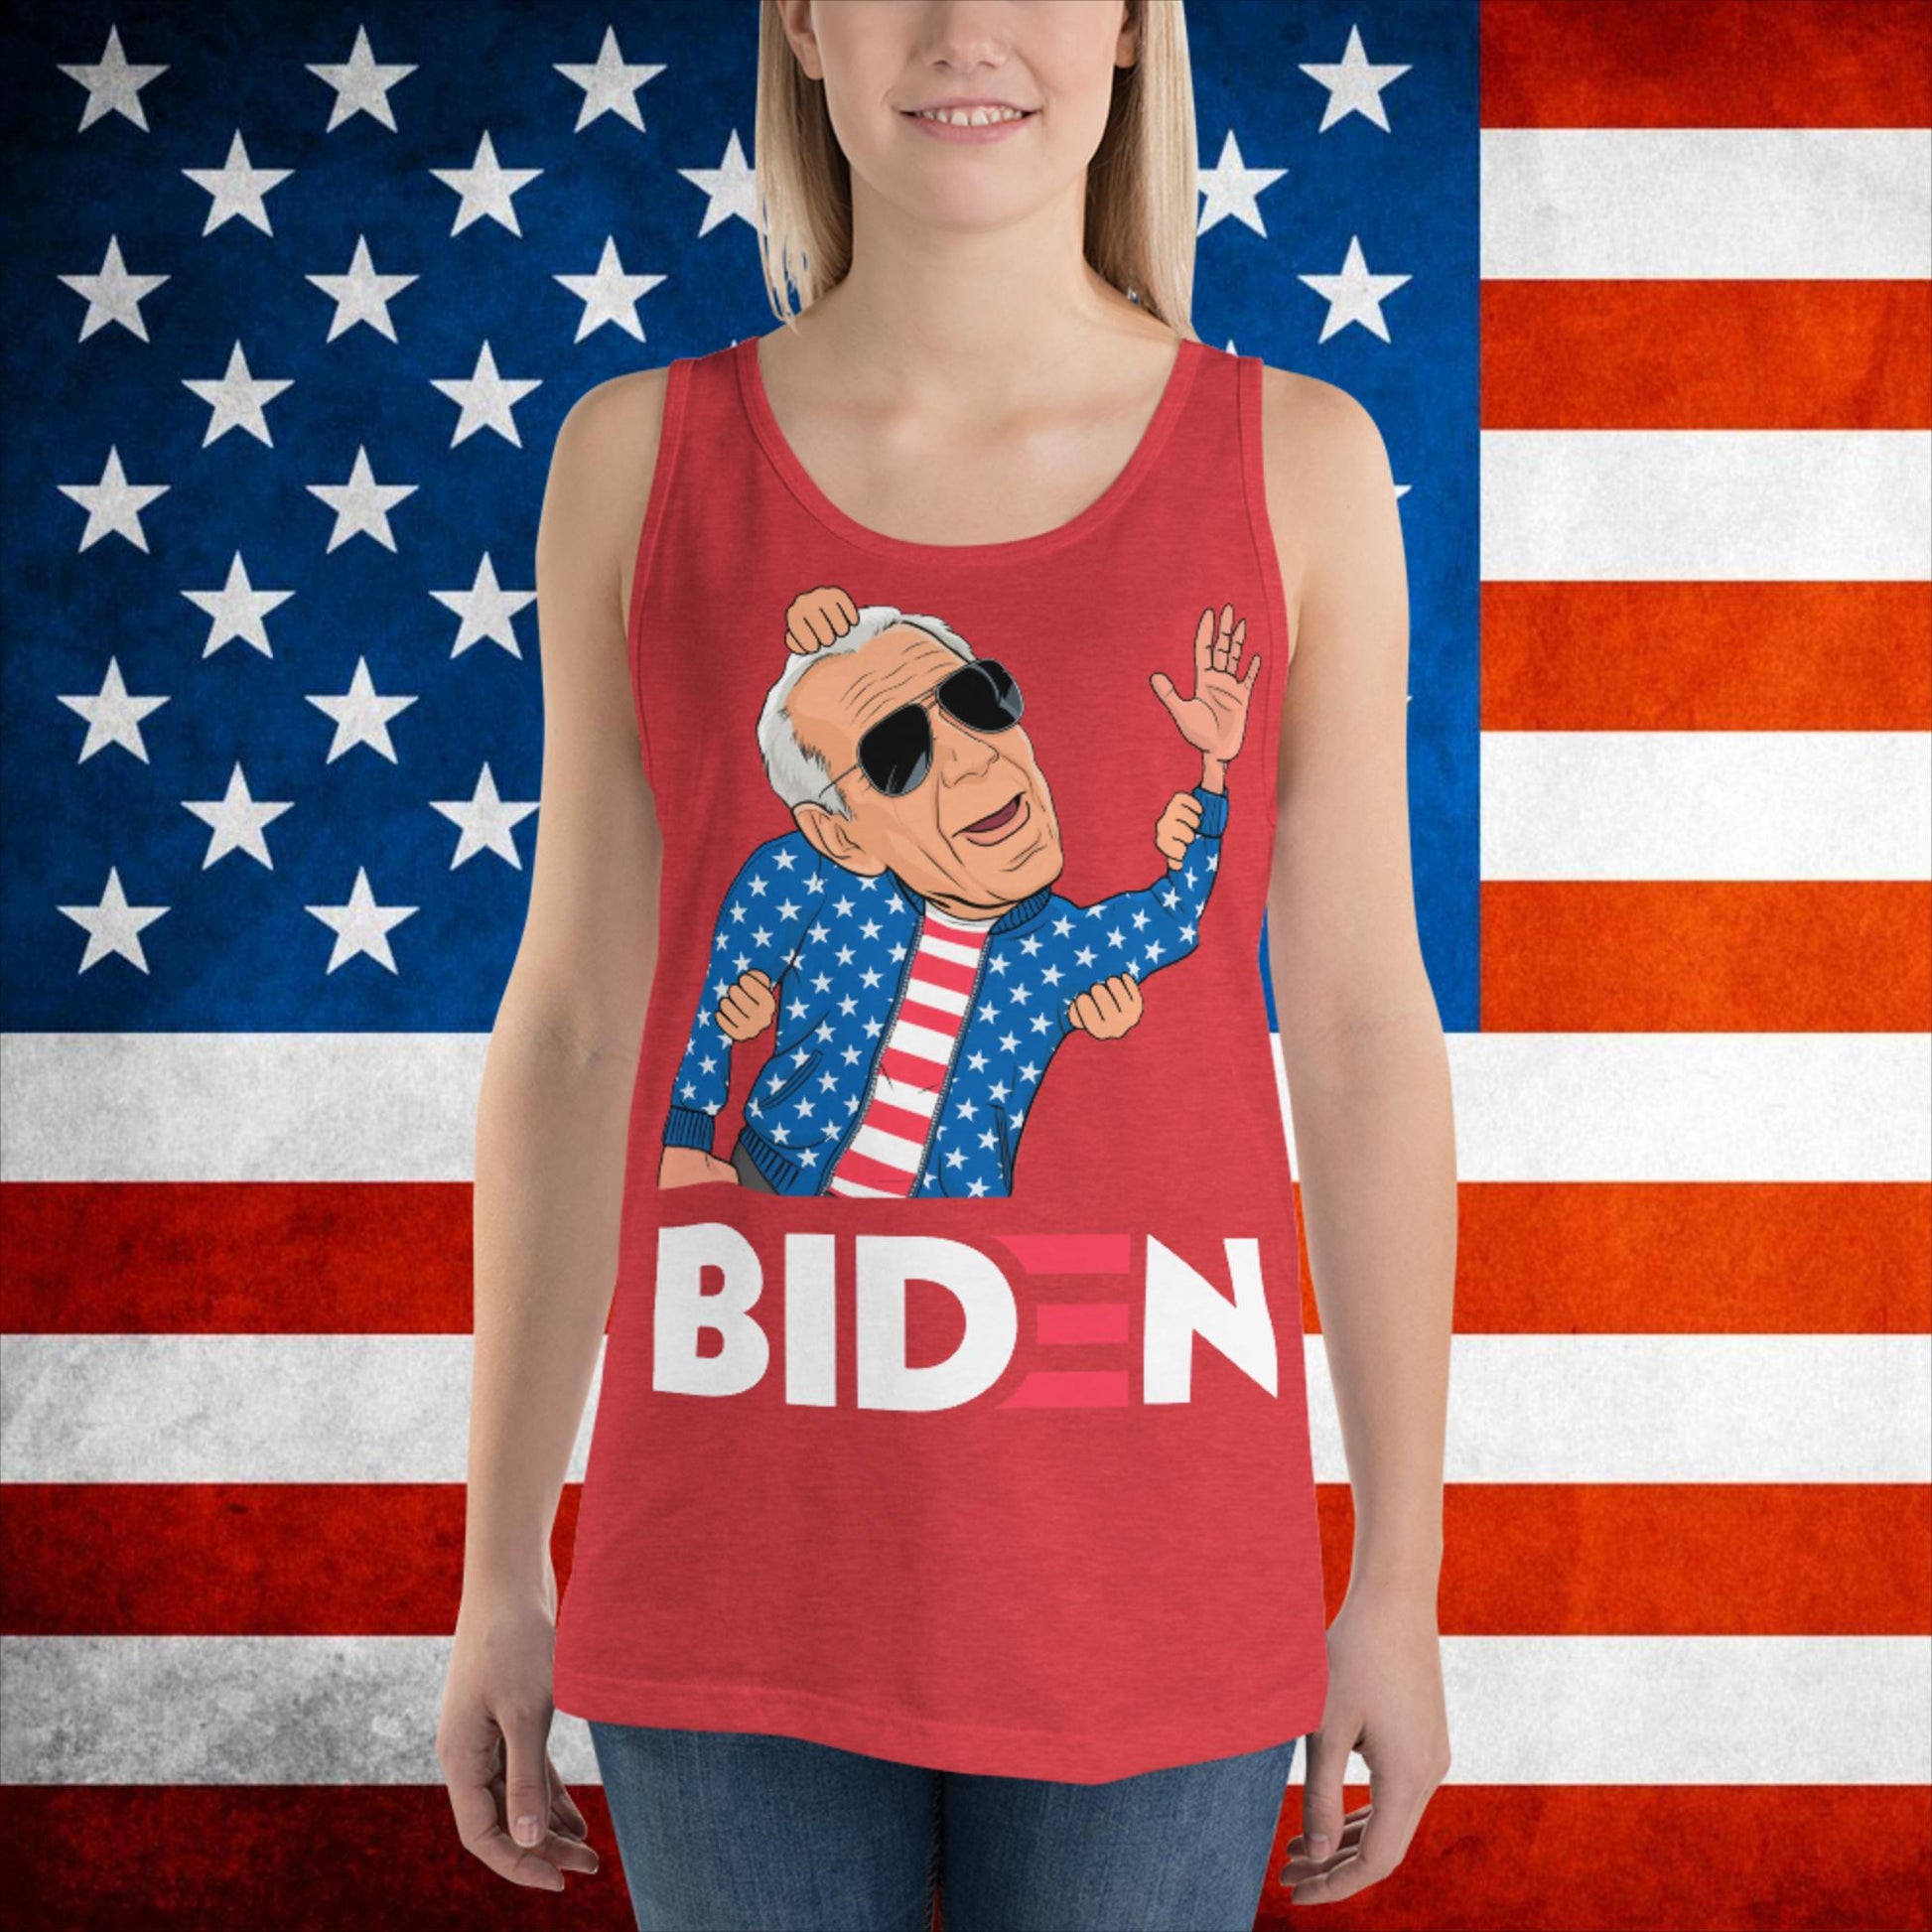 Weekend at Biden's Joe Biden Meme Democrat Republican Trump Gift Biden Gift 90s Vintage Tank Top Next Cult Brand